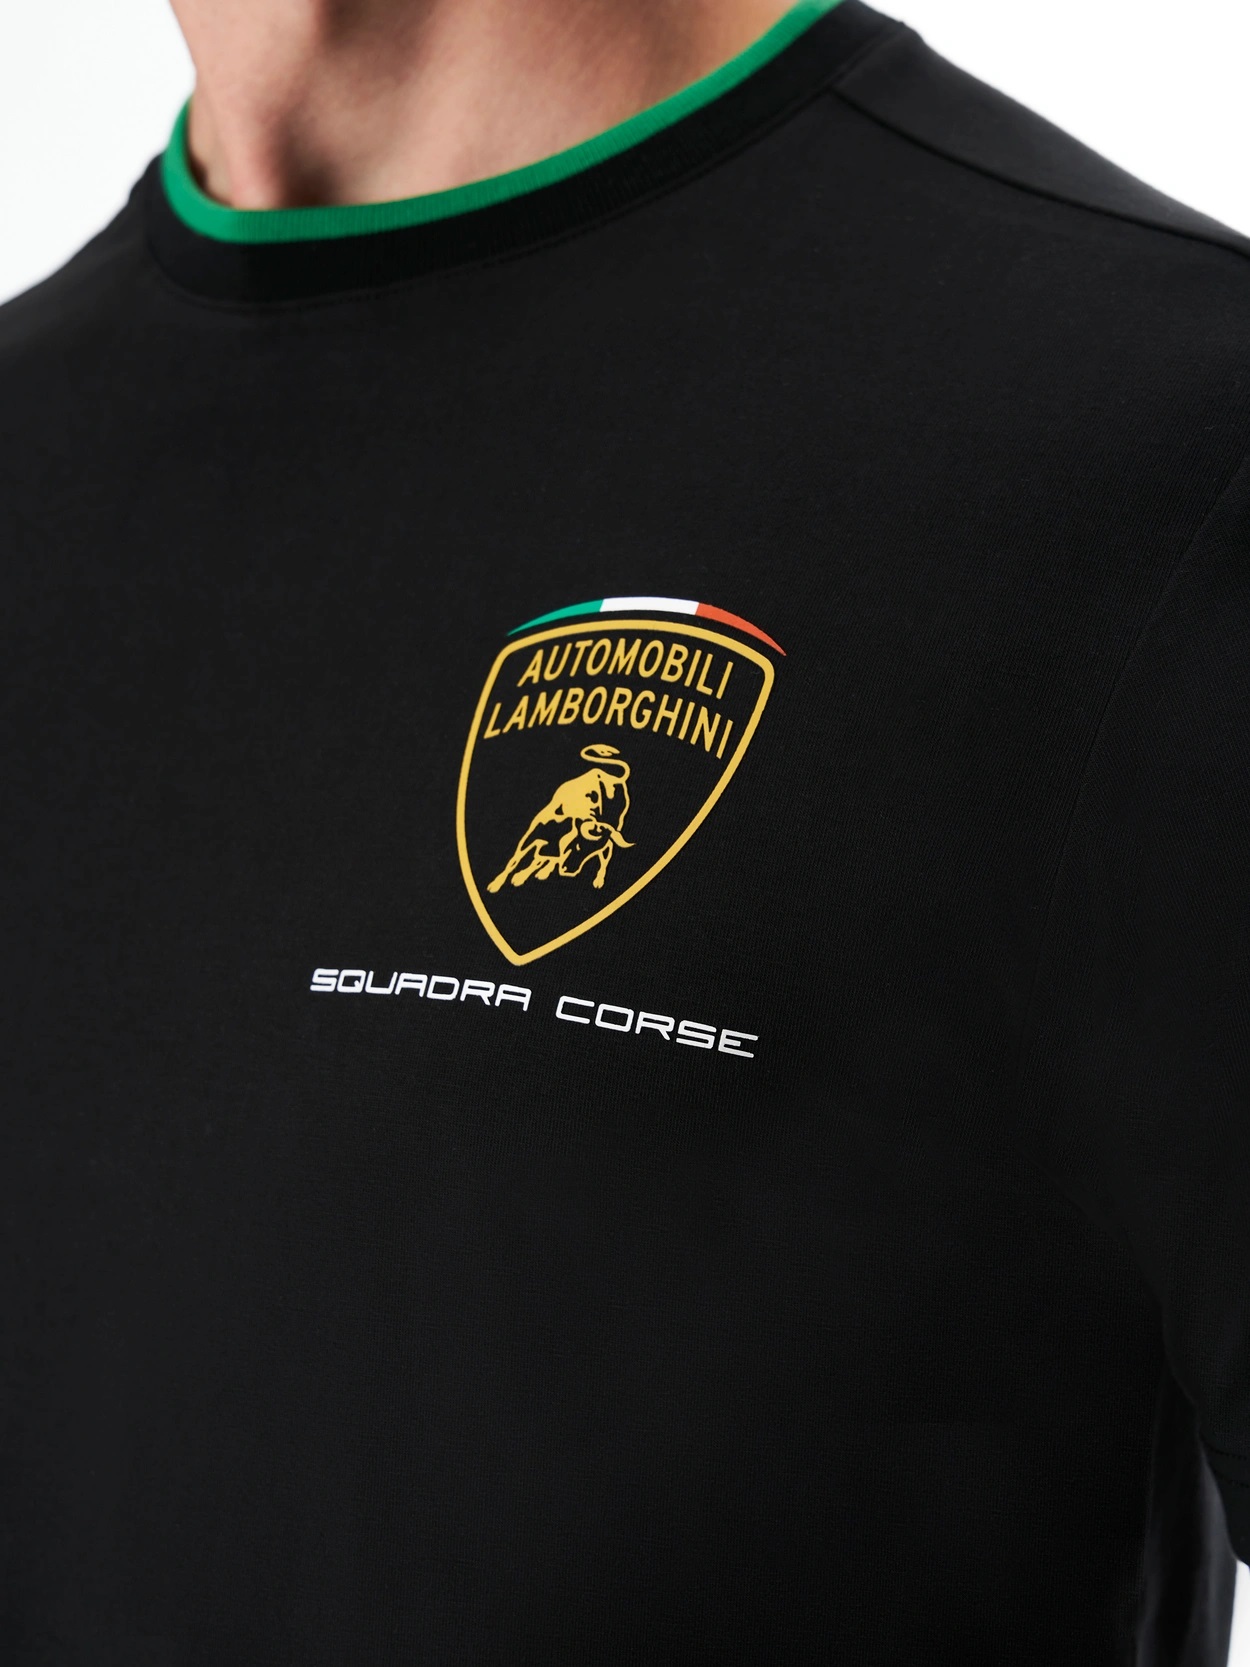 ランボルギーニ SQUADRA CORSE レプリカ メンズ チーム Tシャツ / ブラック画像